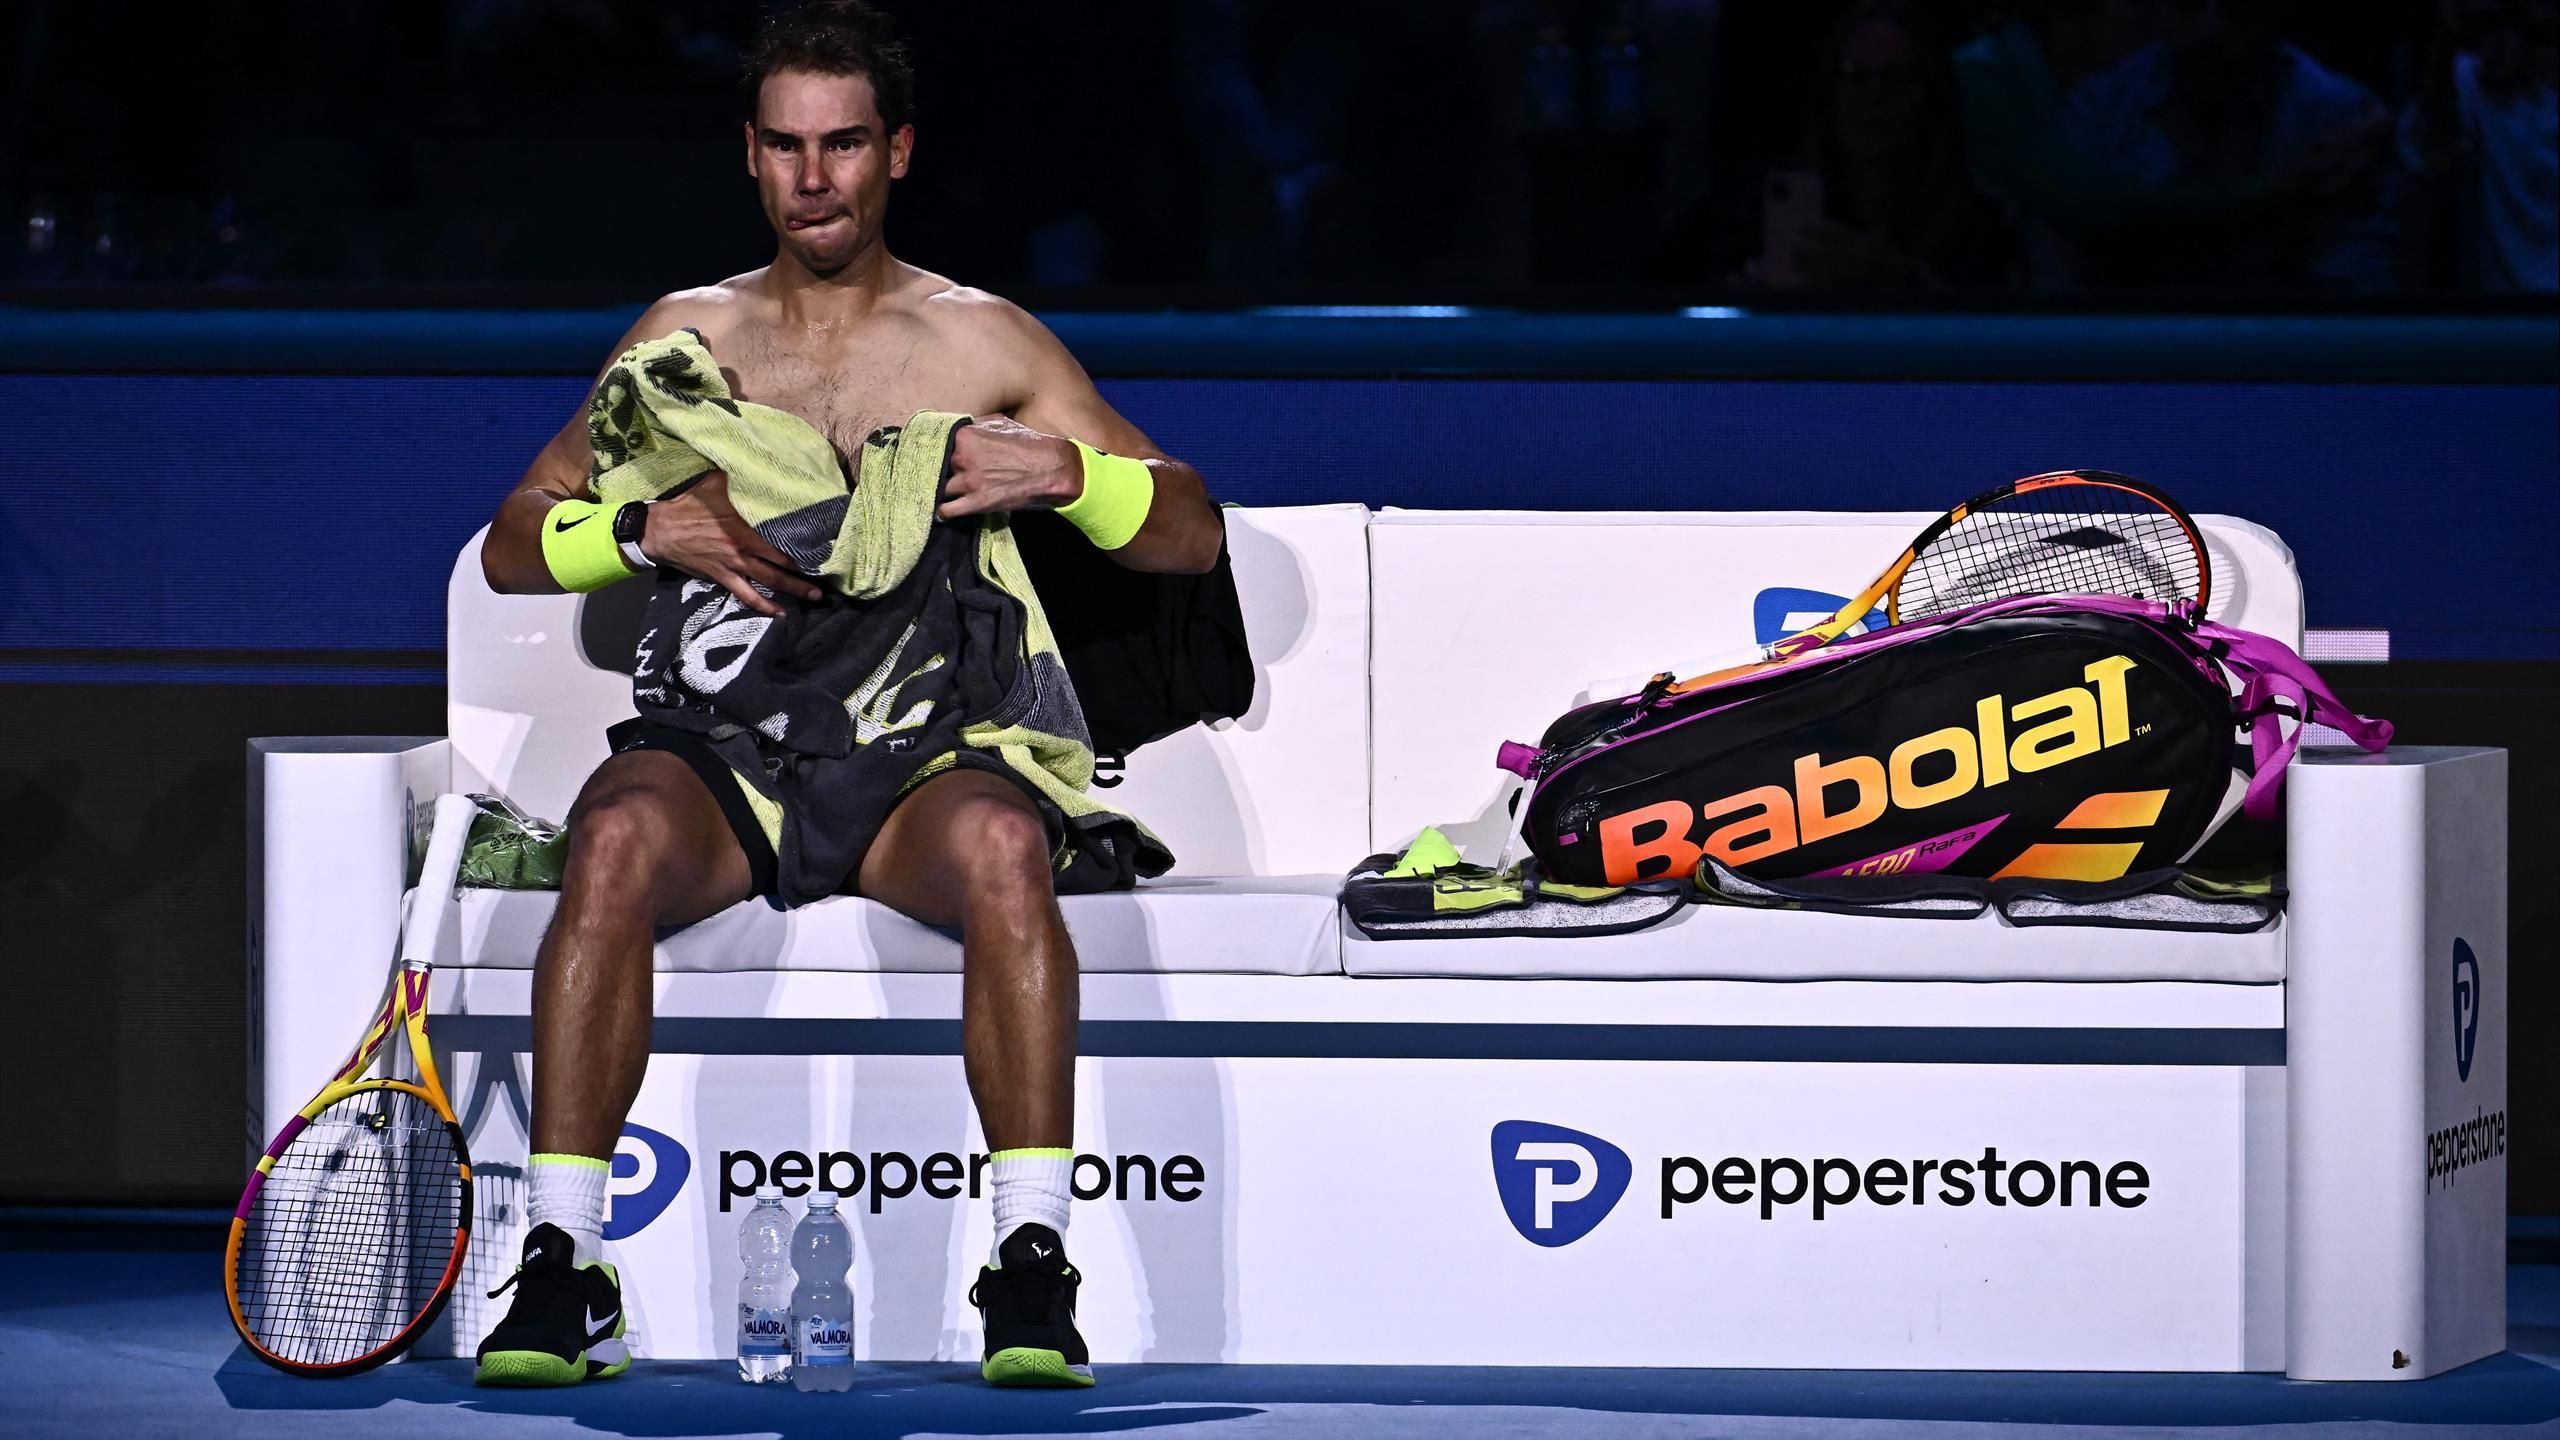 Rafael Nadal kassiert bei ATP Finals Auftaktpleite gegen Taylor Fritz in Turin - Spanier klar geschlagen